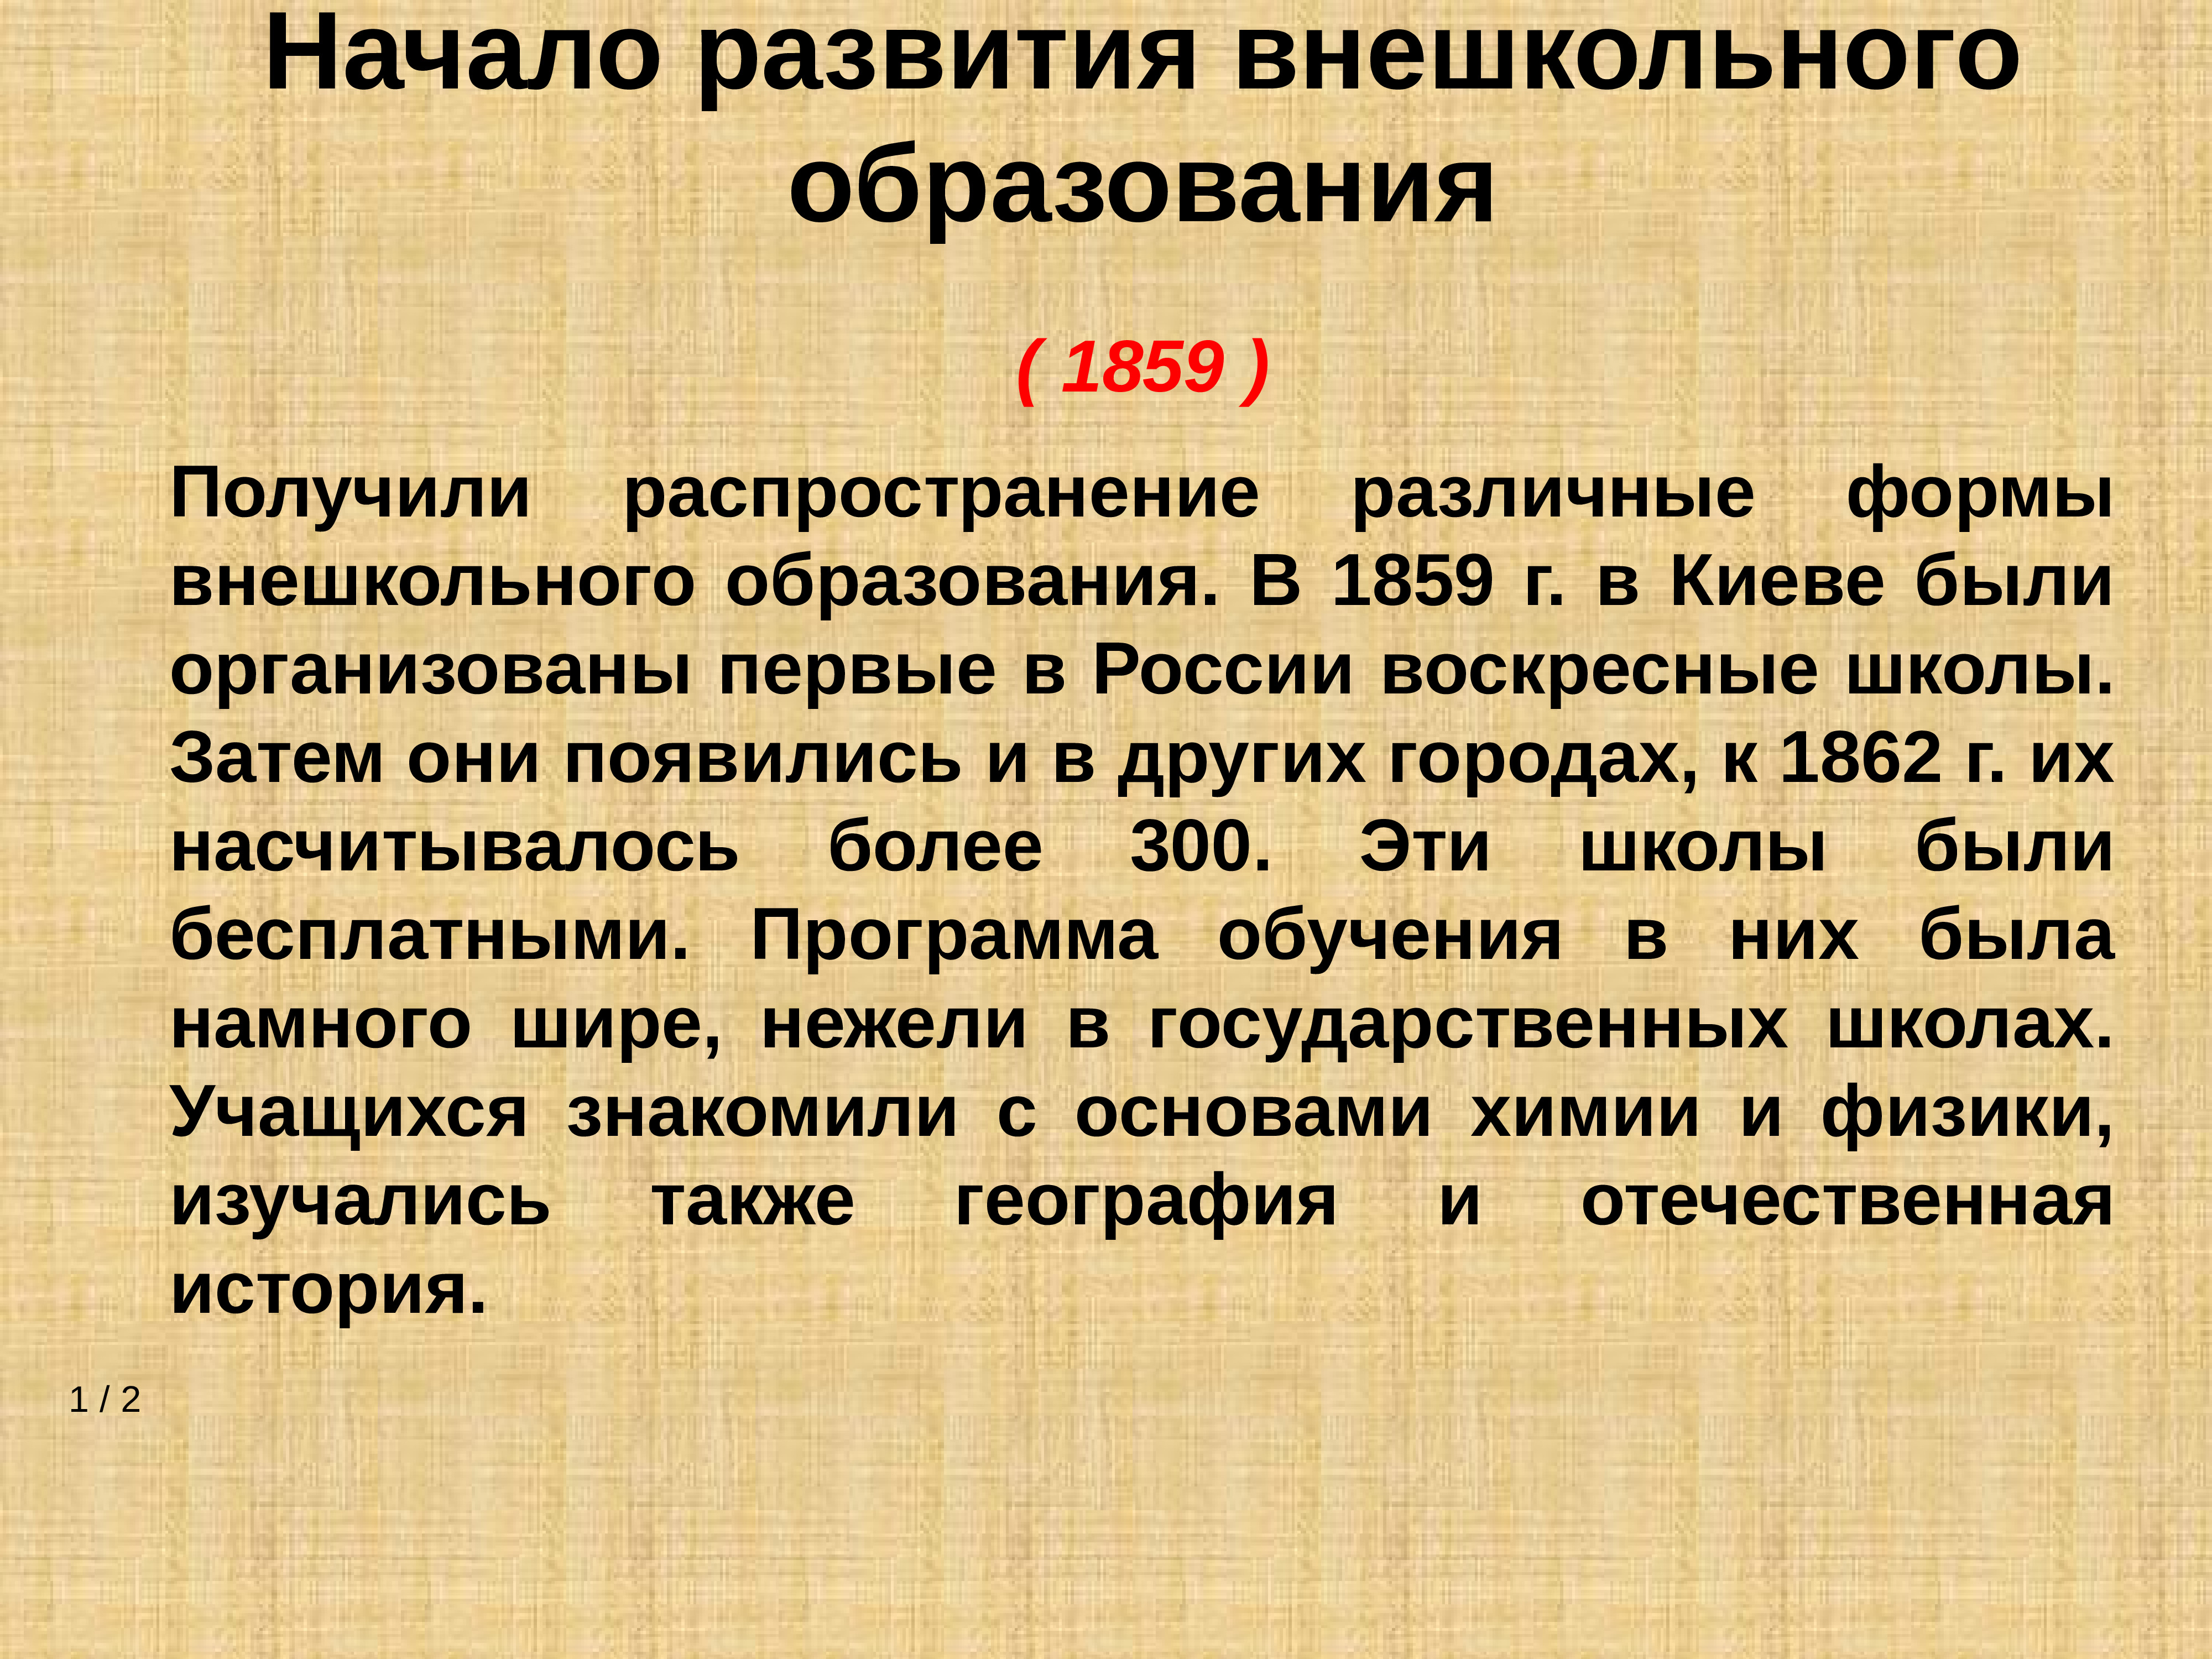 Образование в царской россии до революции 1917 года